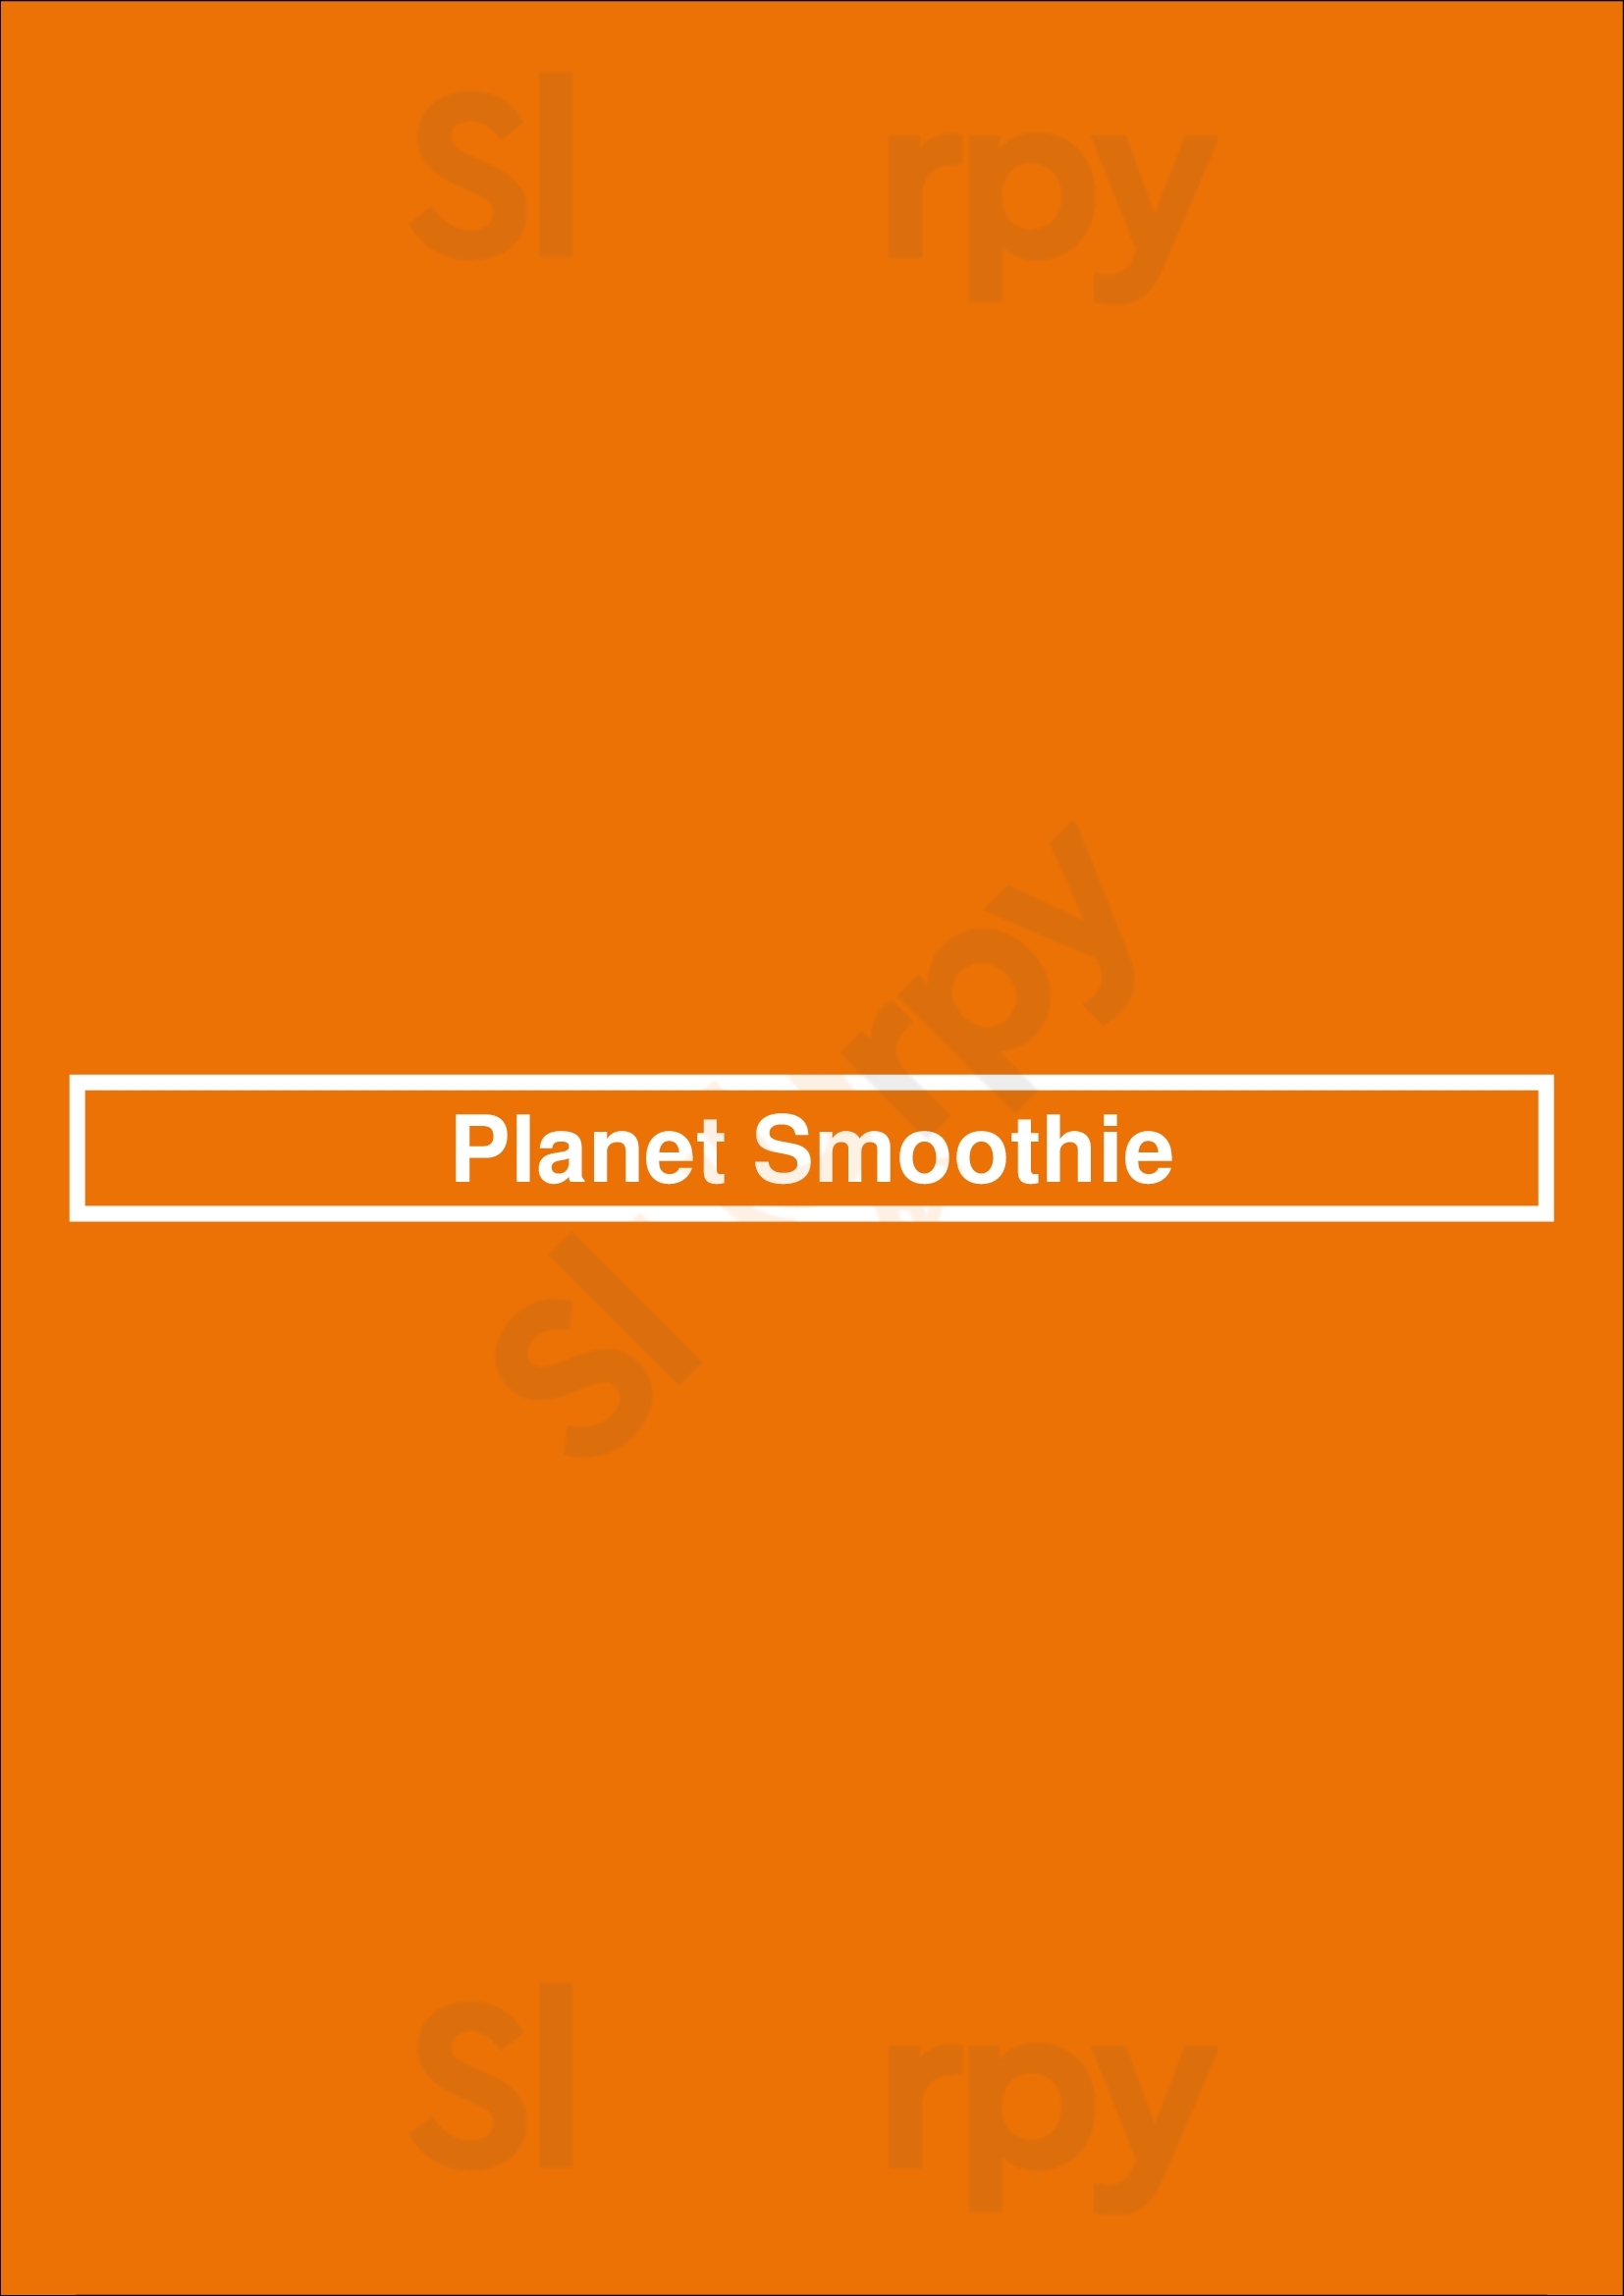 Planet Smoothie Orlando Menu - 1